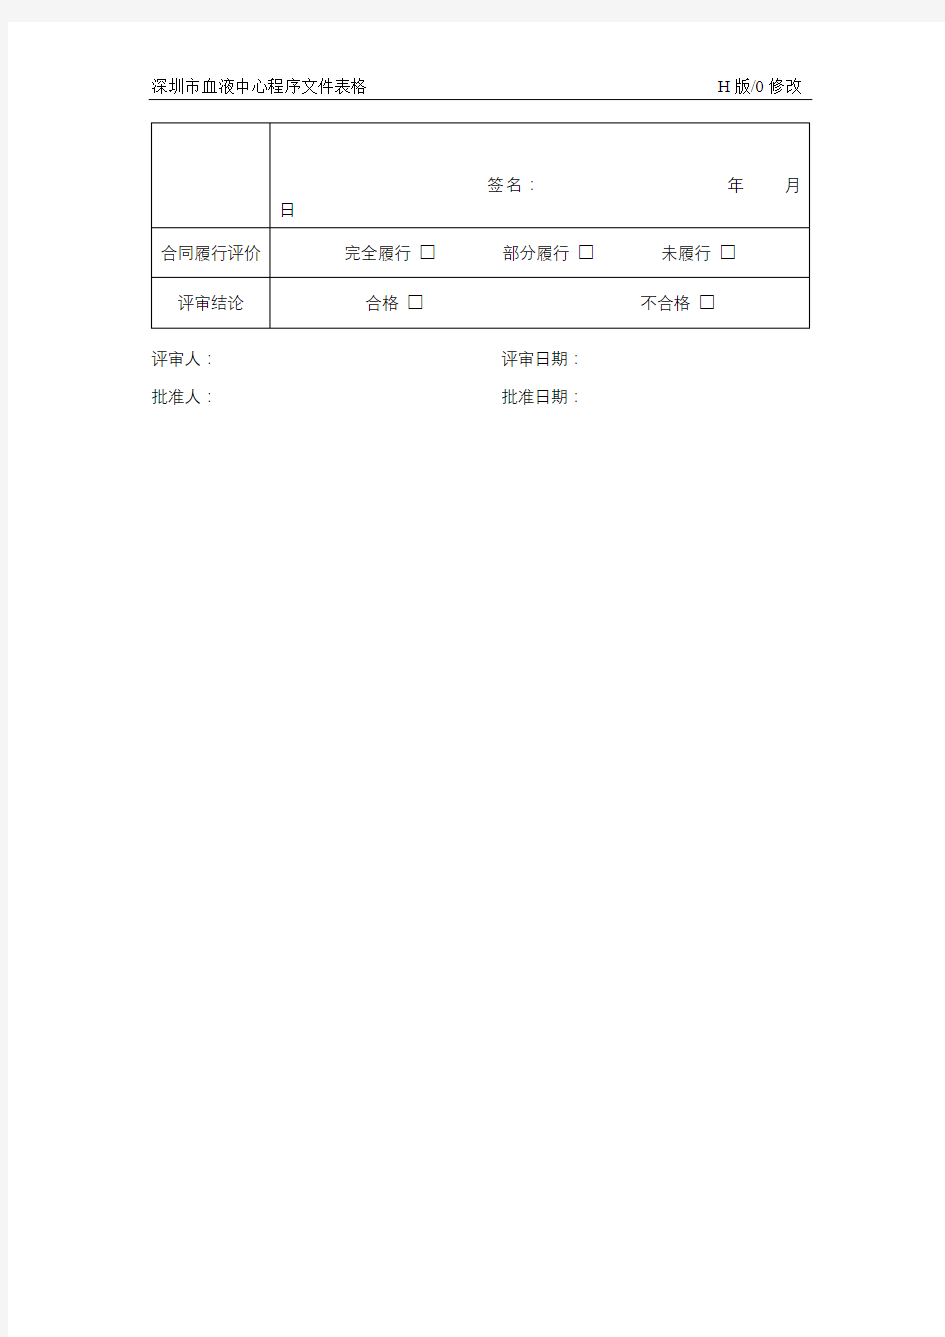 供应商评审记录表【模板】